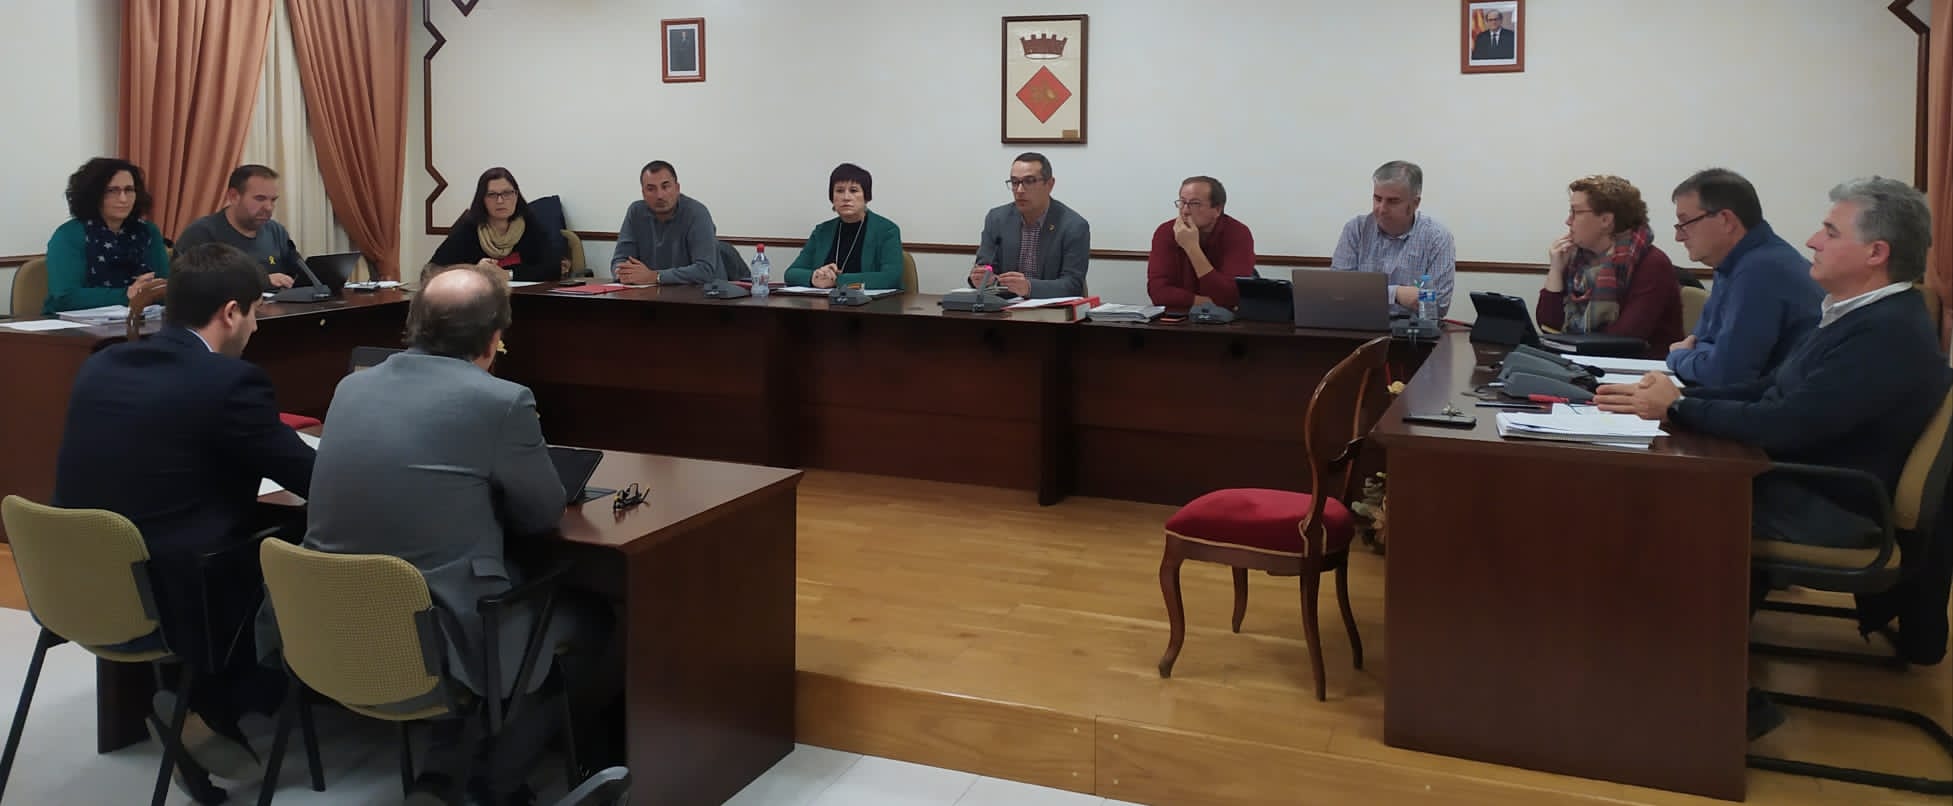 Fotografia del Ple Ordinari celebrat aquest dijous 28 de novembre a l'Ajuntament de Constantí, en el qual s'han aprovat els pressupostos generals per a l'any 2020